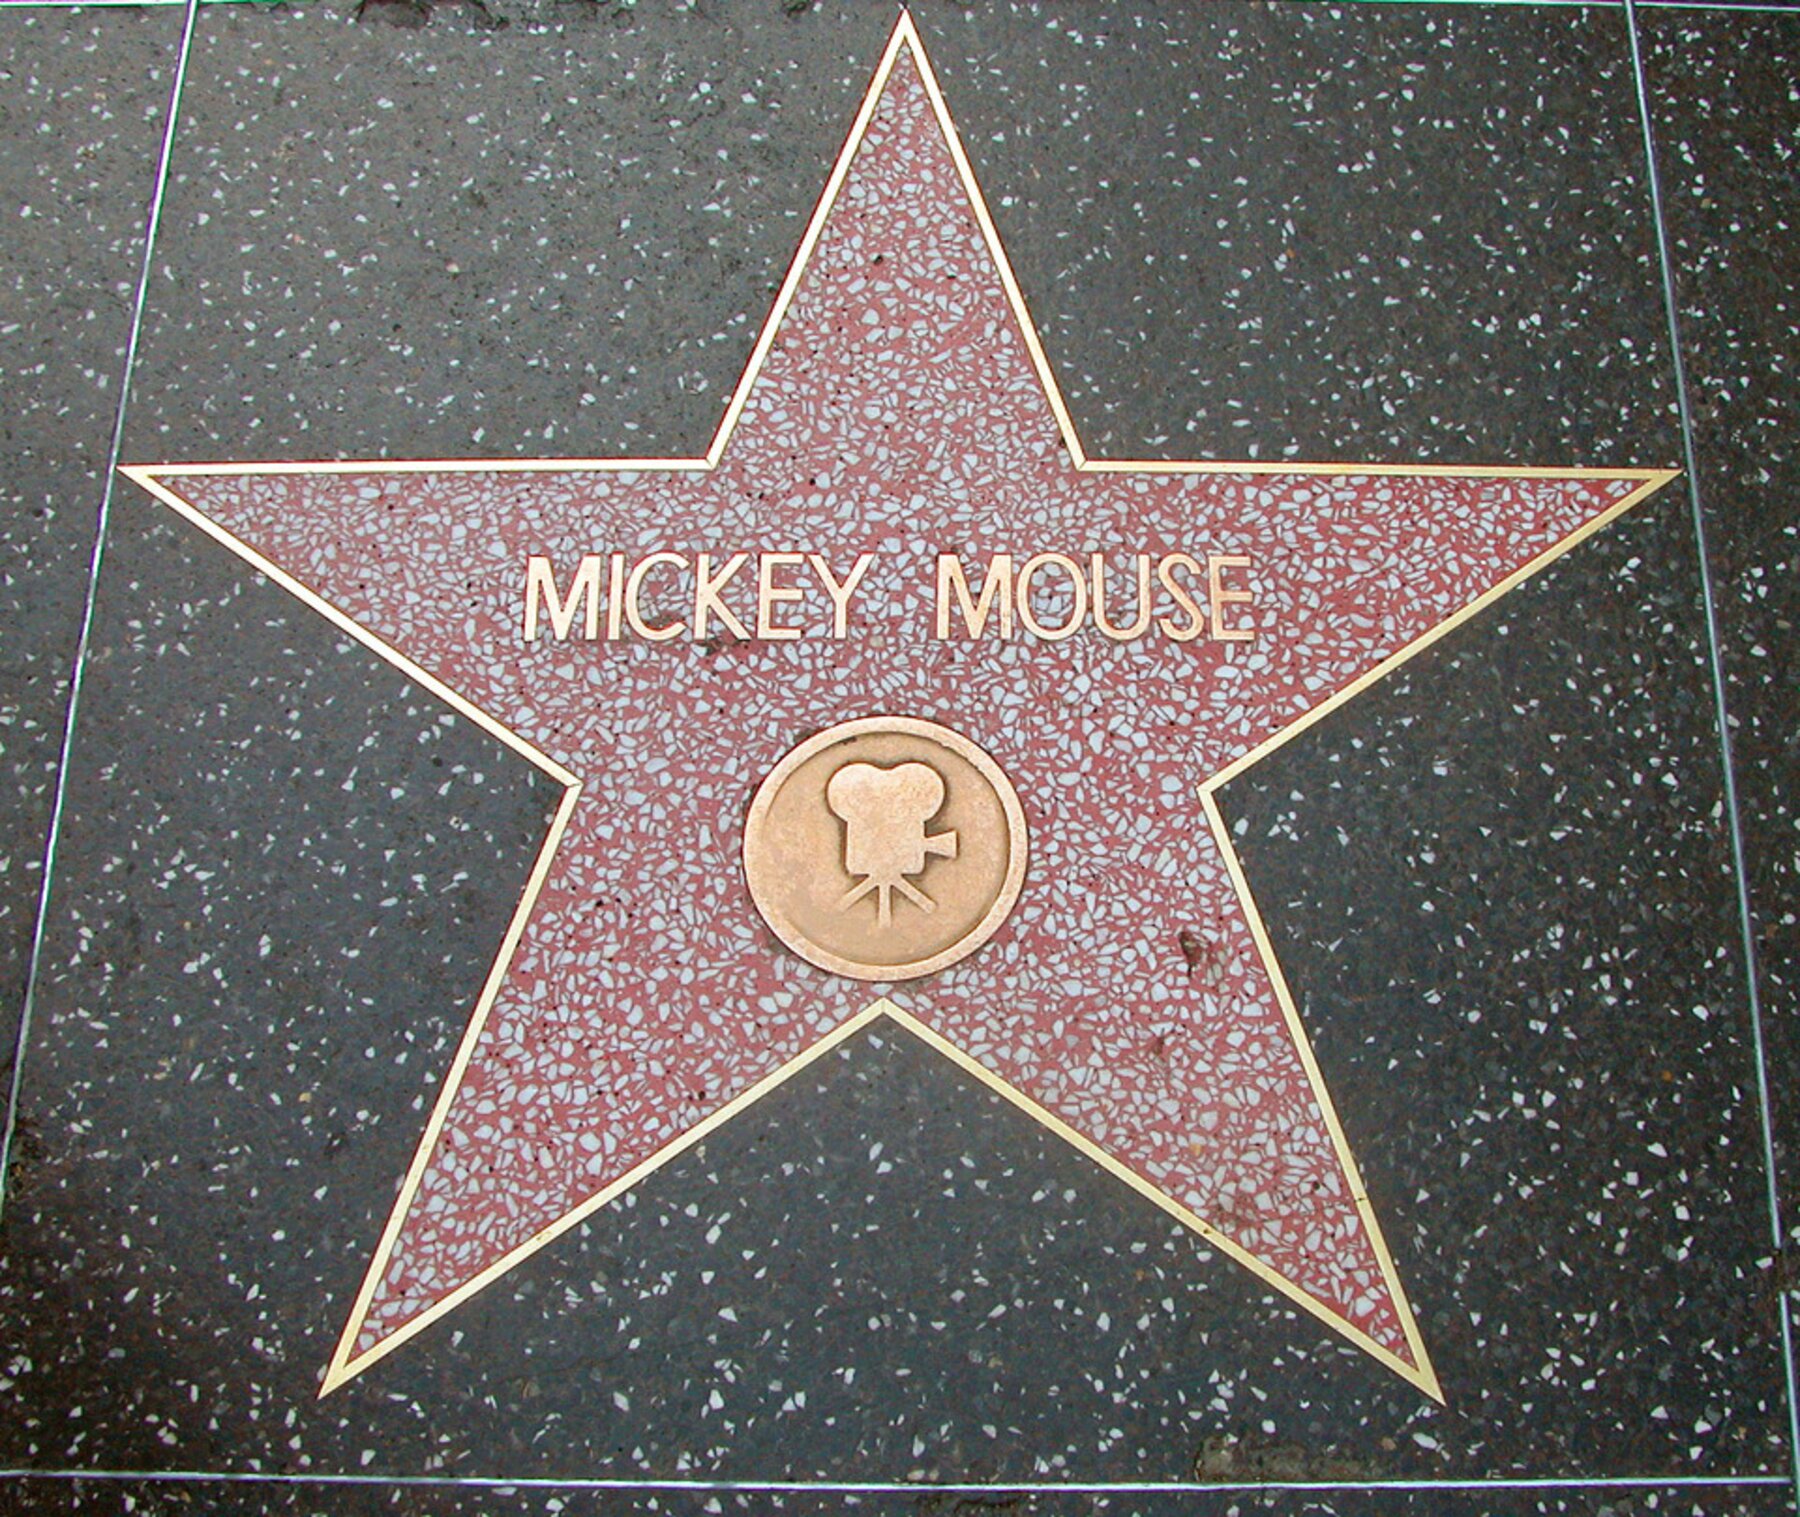 Ngôi sao vinh danh chuột Mickey trên đại lộ danh vọng